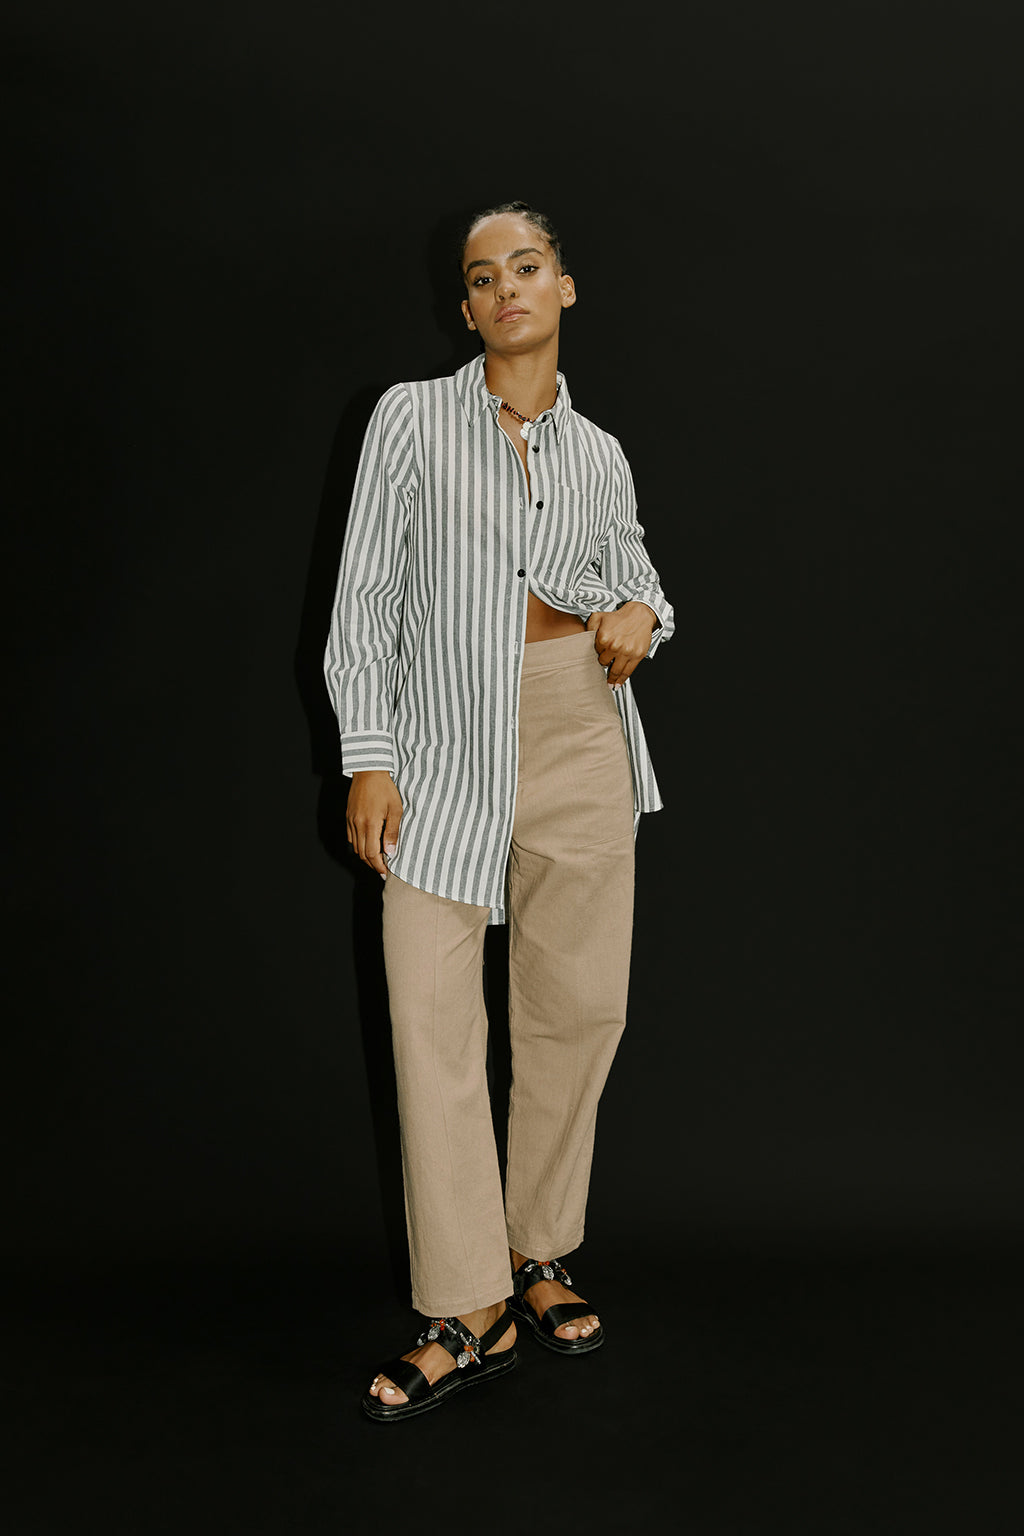 Paola Shirt - Charcoal Stripe